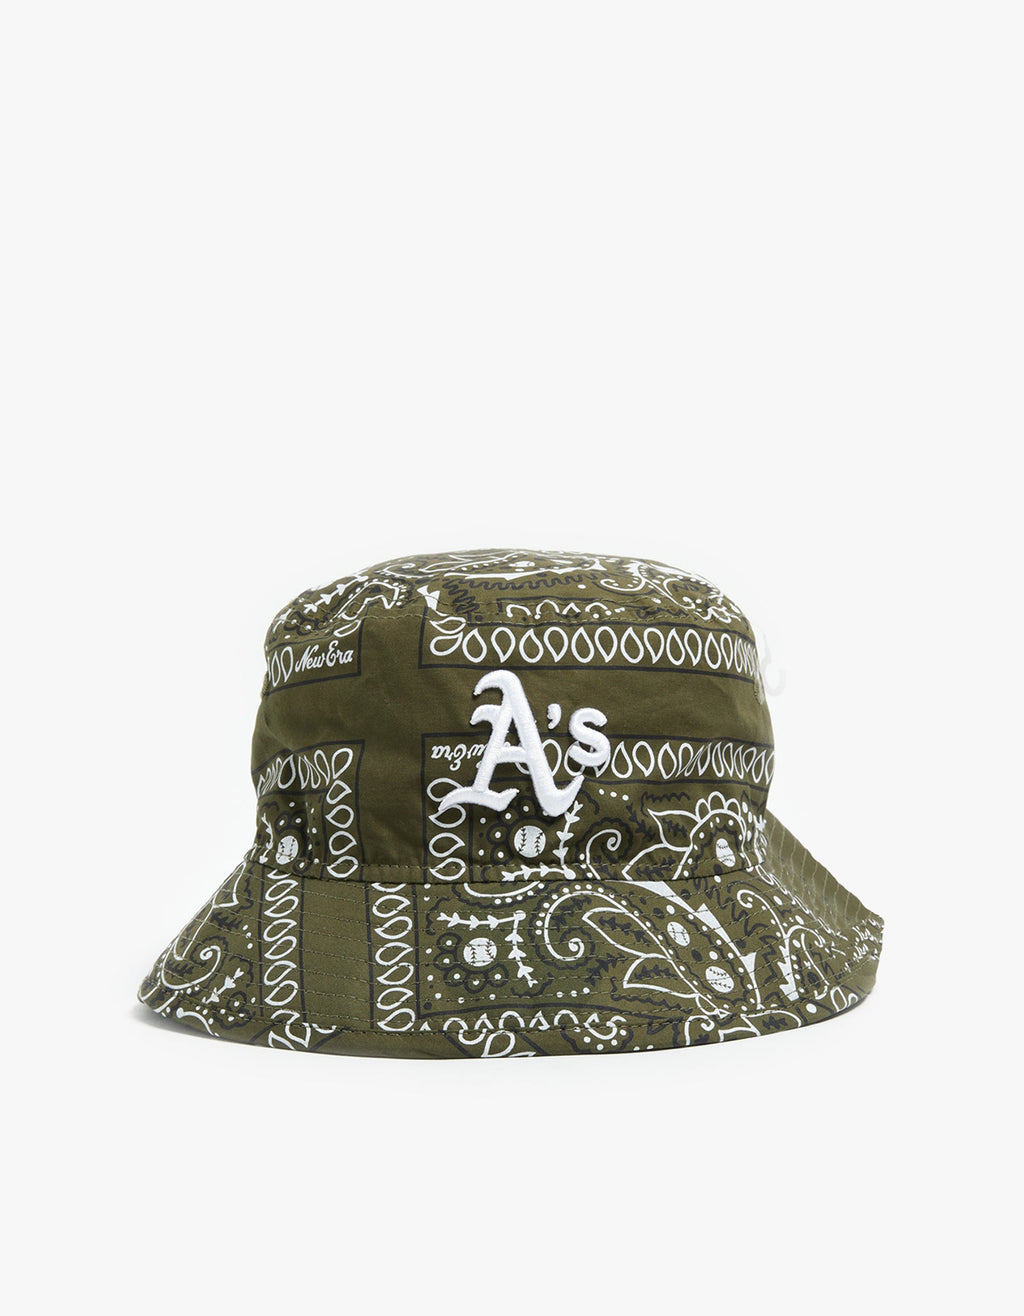 Oakland Athletics Bucket Hat - Olive Paisley/White